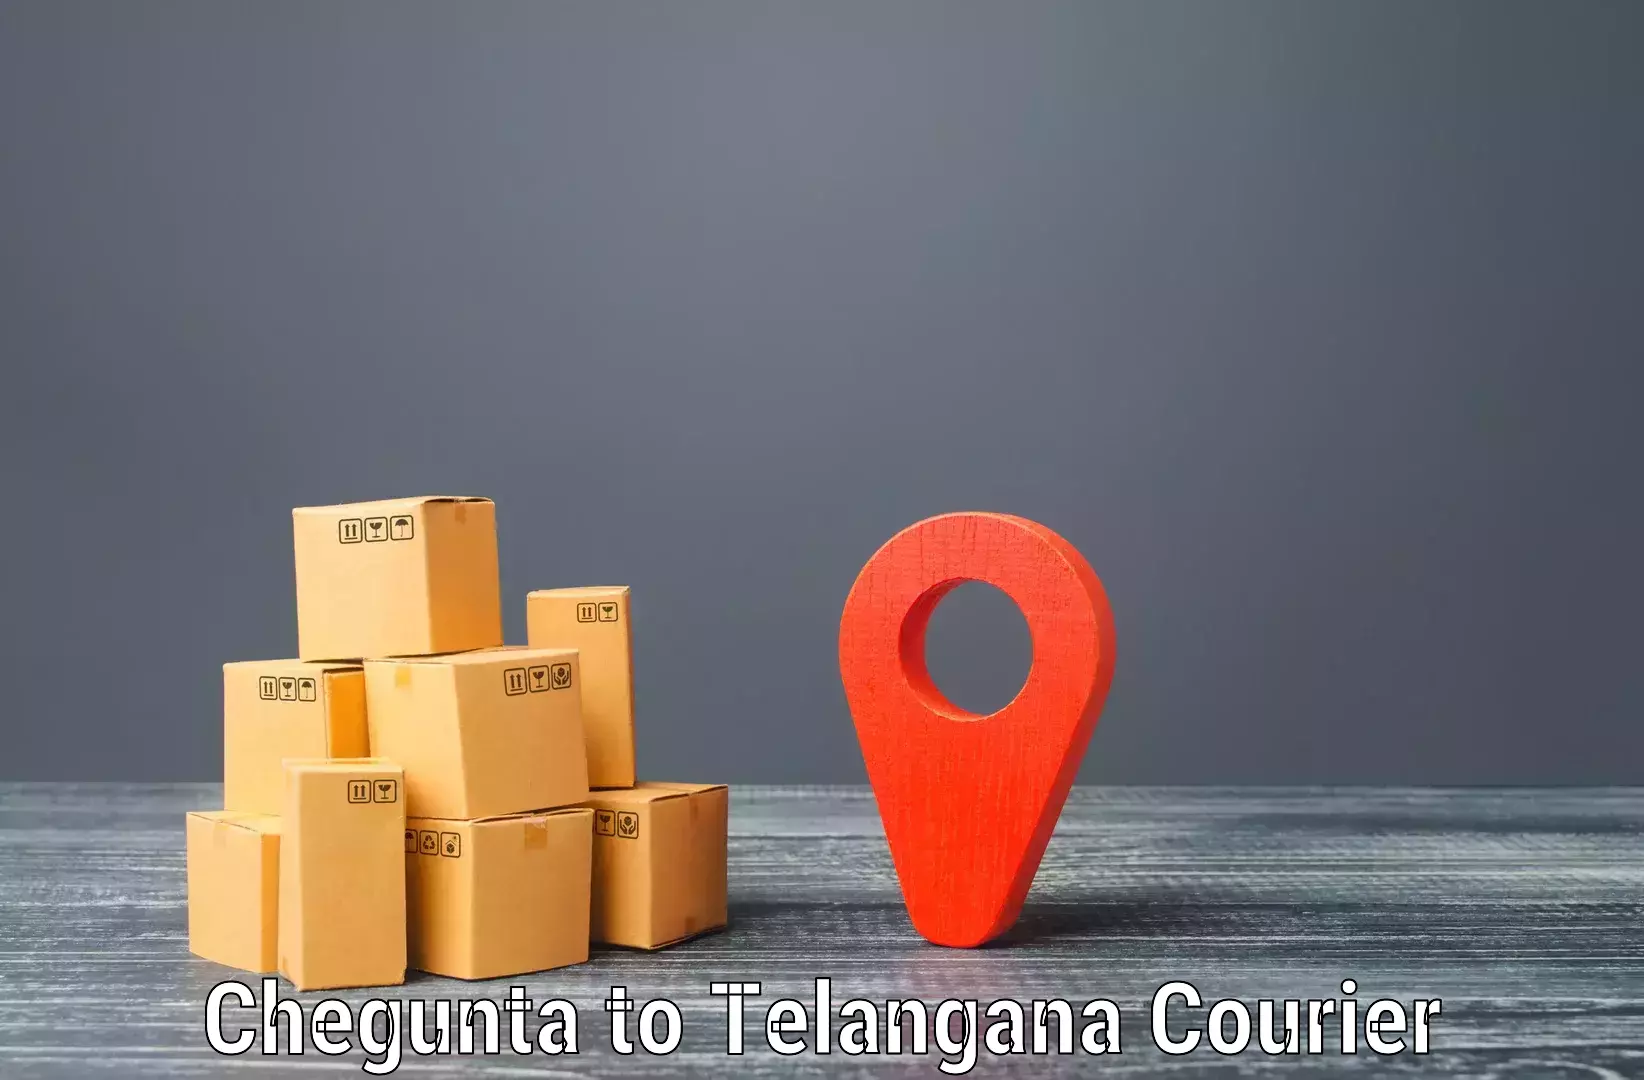 Custom courier solutions in Chegunta to IIT Hyderabad